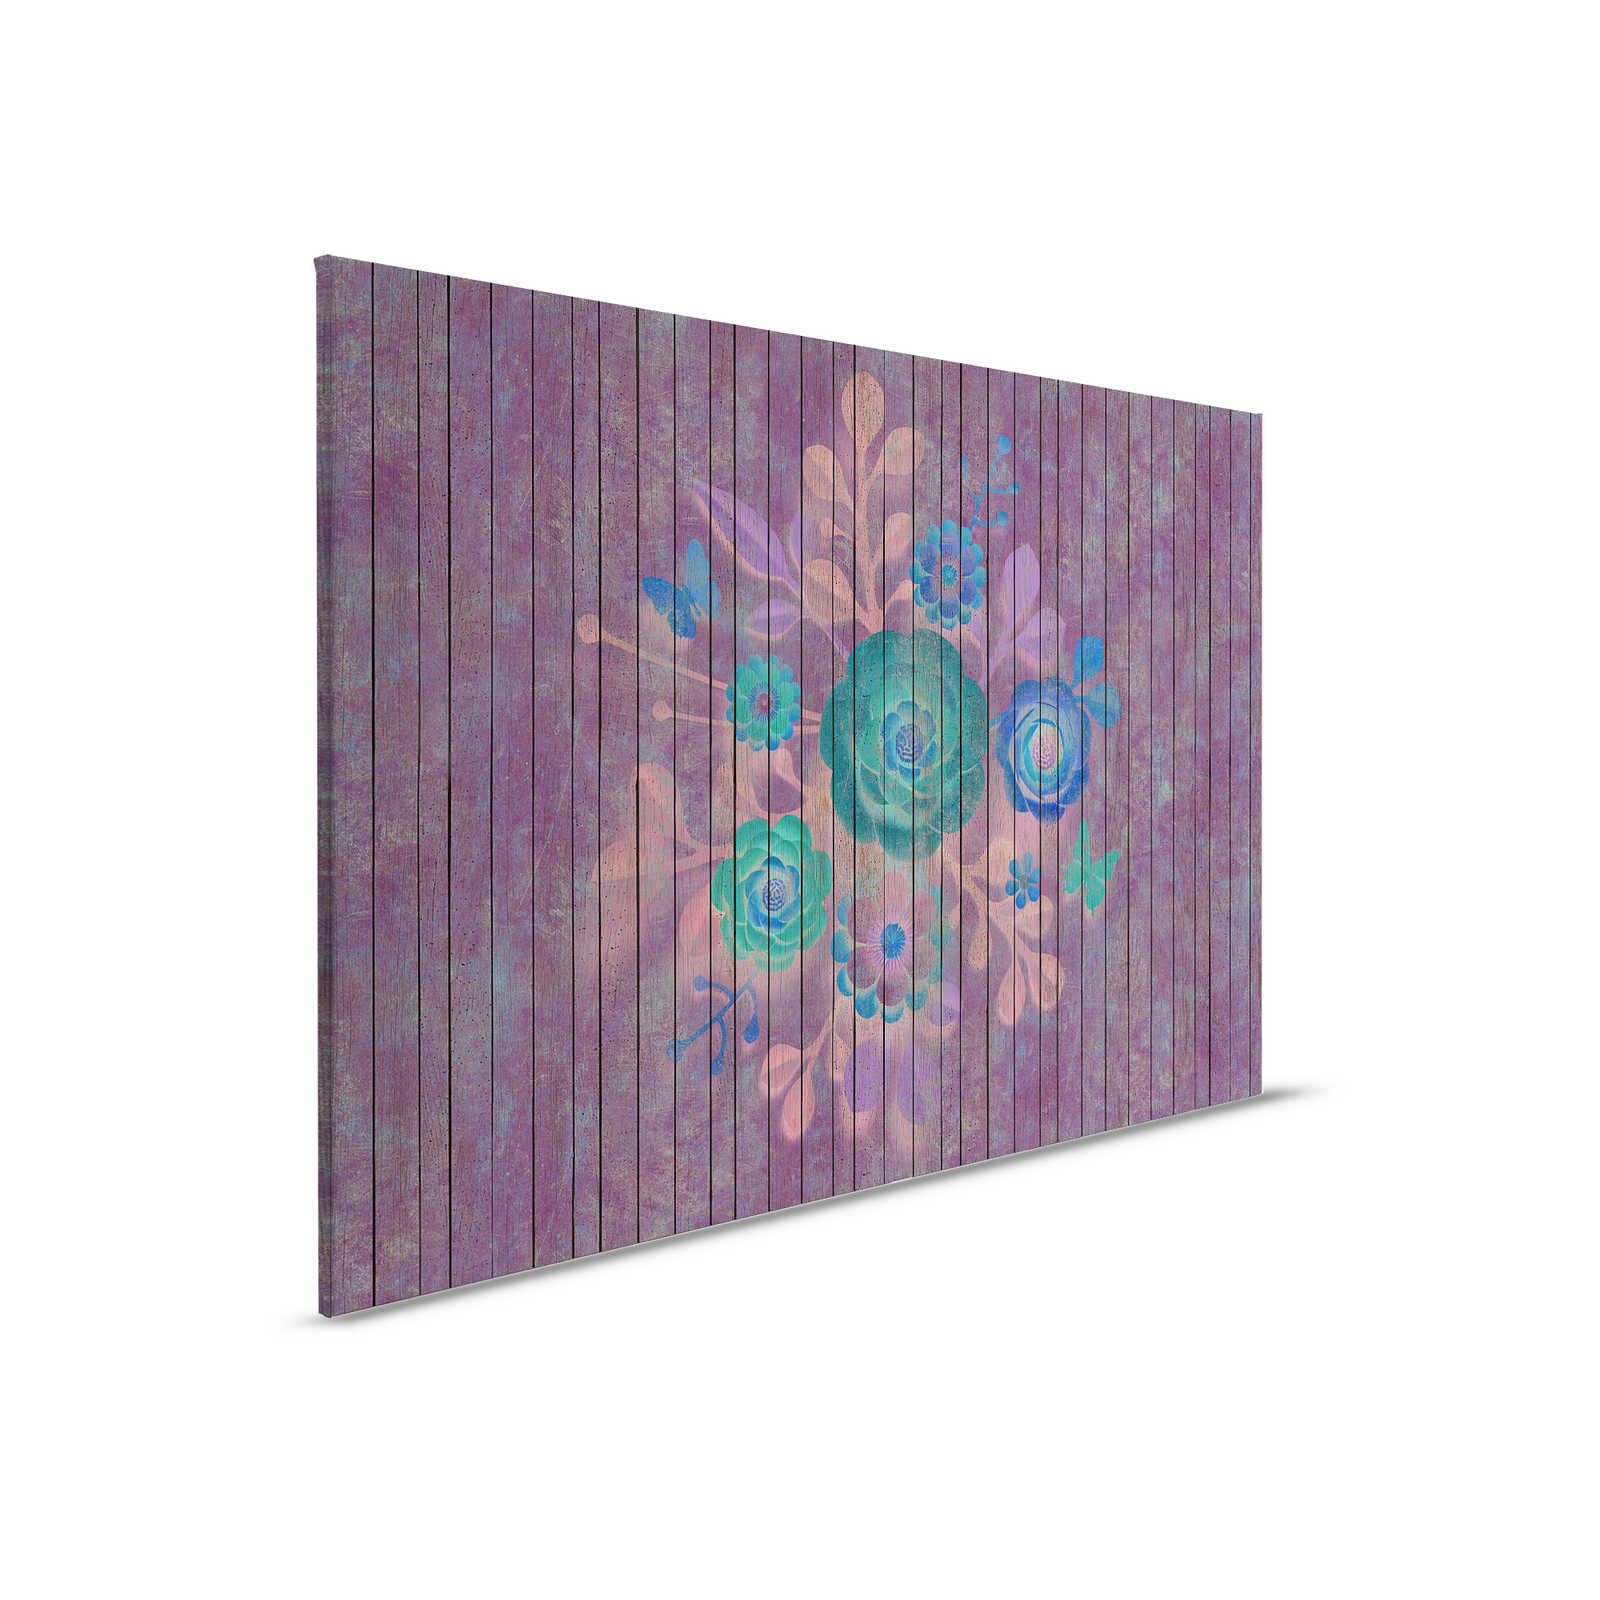 Spuitboeket 1 - Canvas schilderij met bloemen op board muur - Houten panelen breed - 0.90 m x 0.60 m
